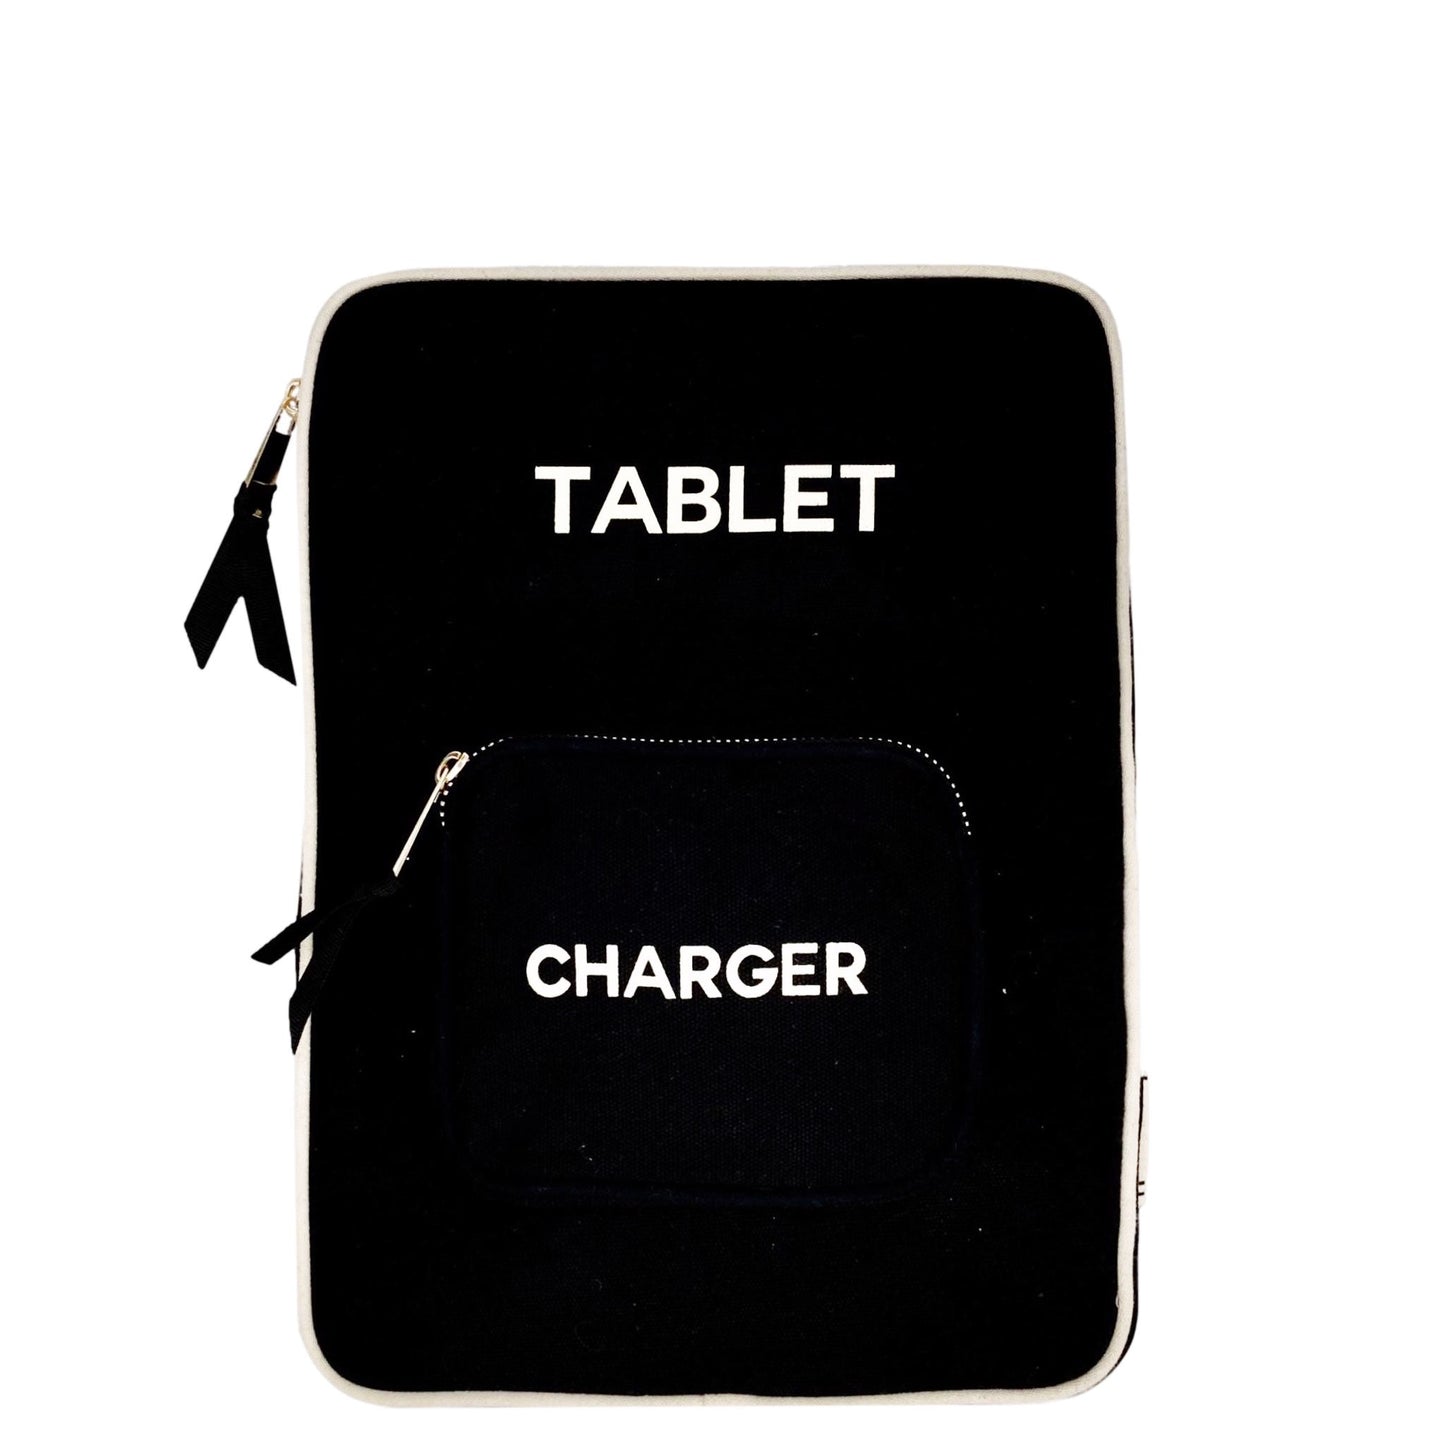 Pochette pour tablette avec poche chargeur attachée en coton naturel